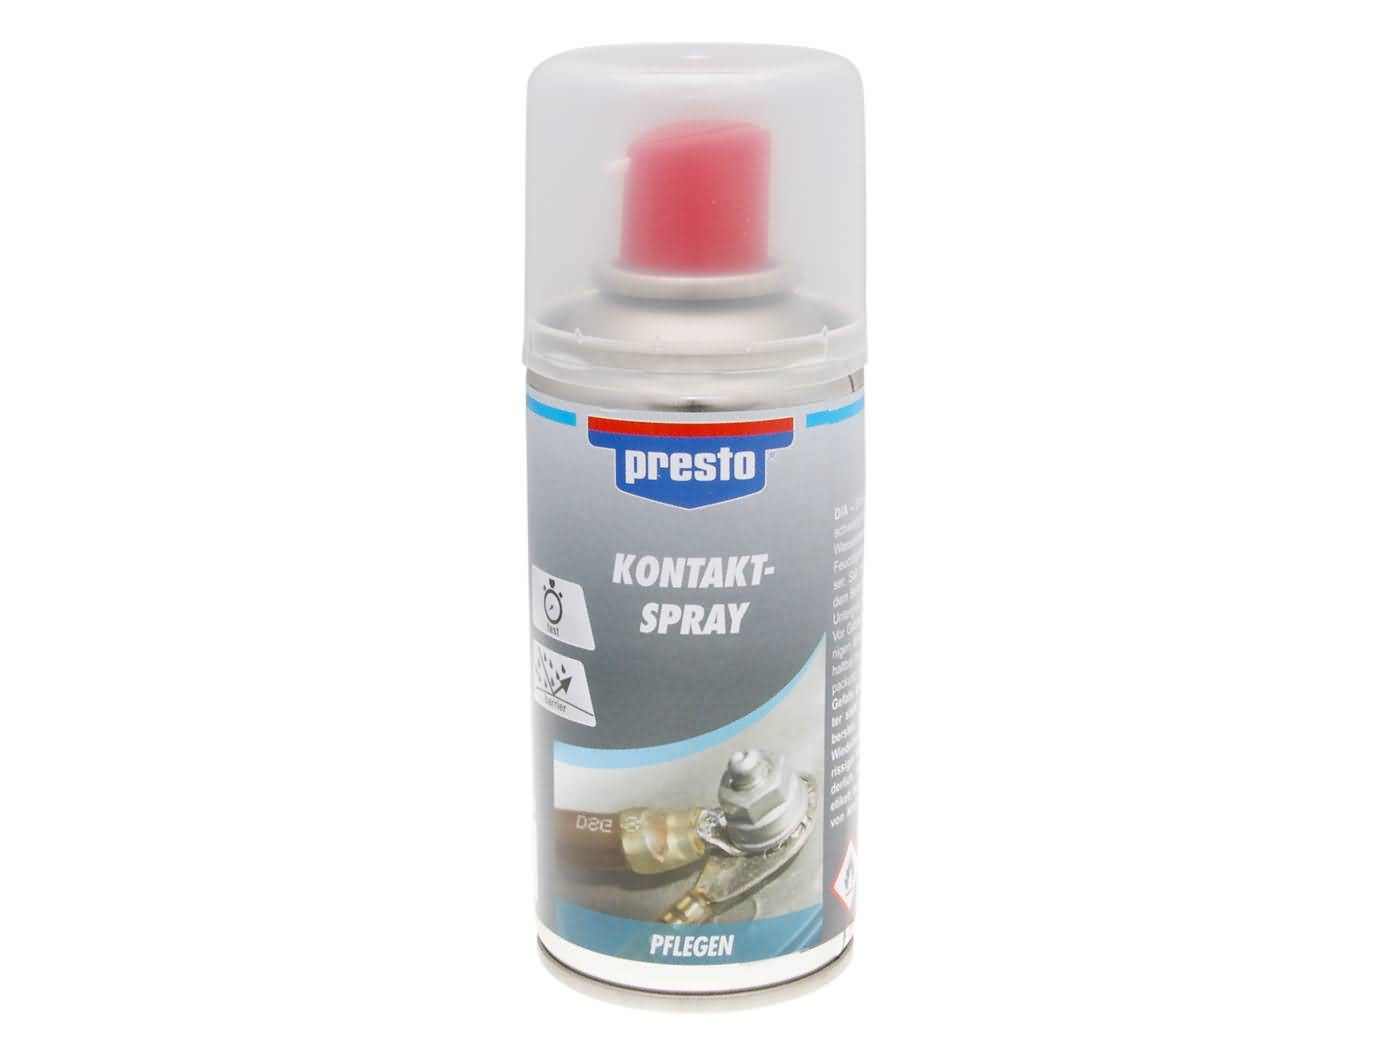 Presto kontakt spray - 150ml